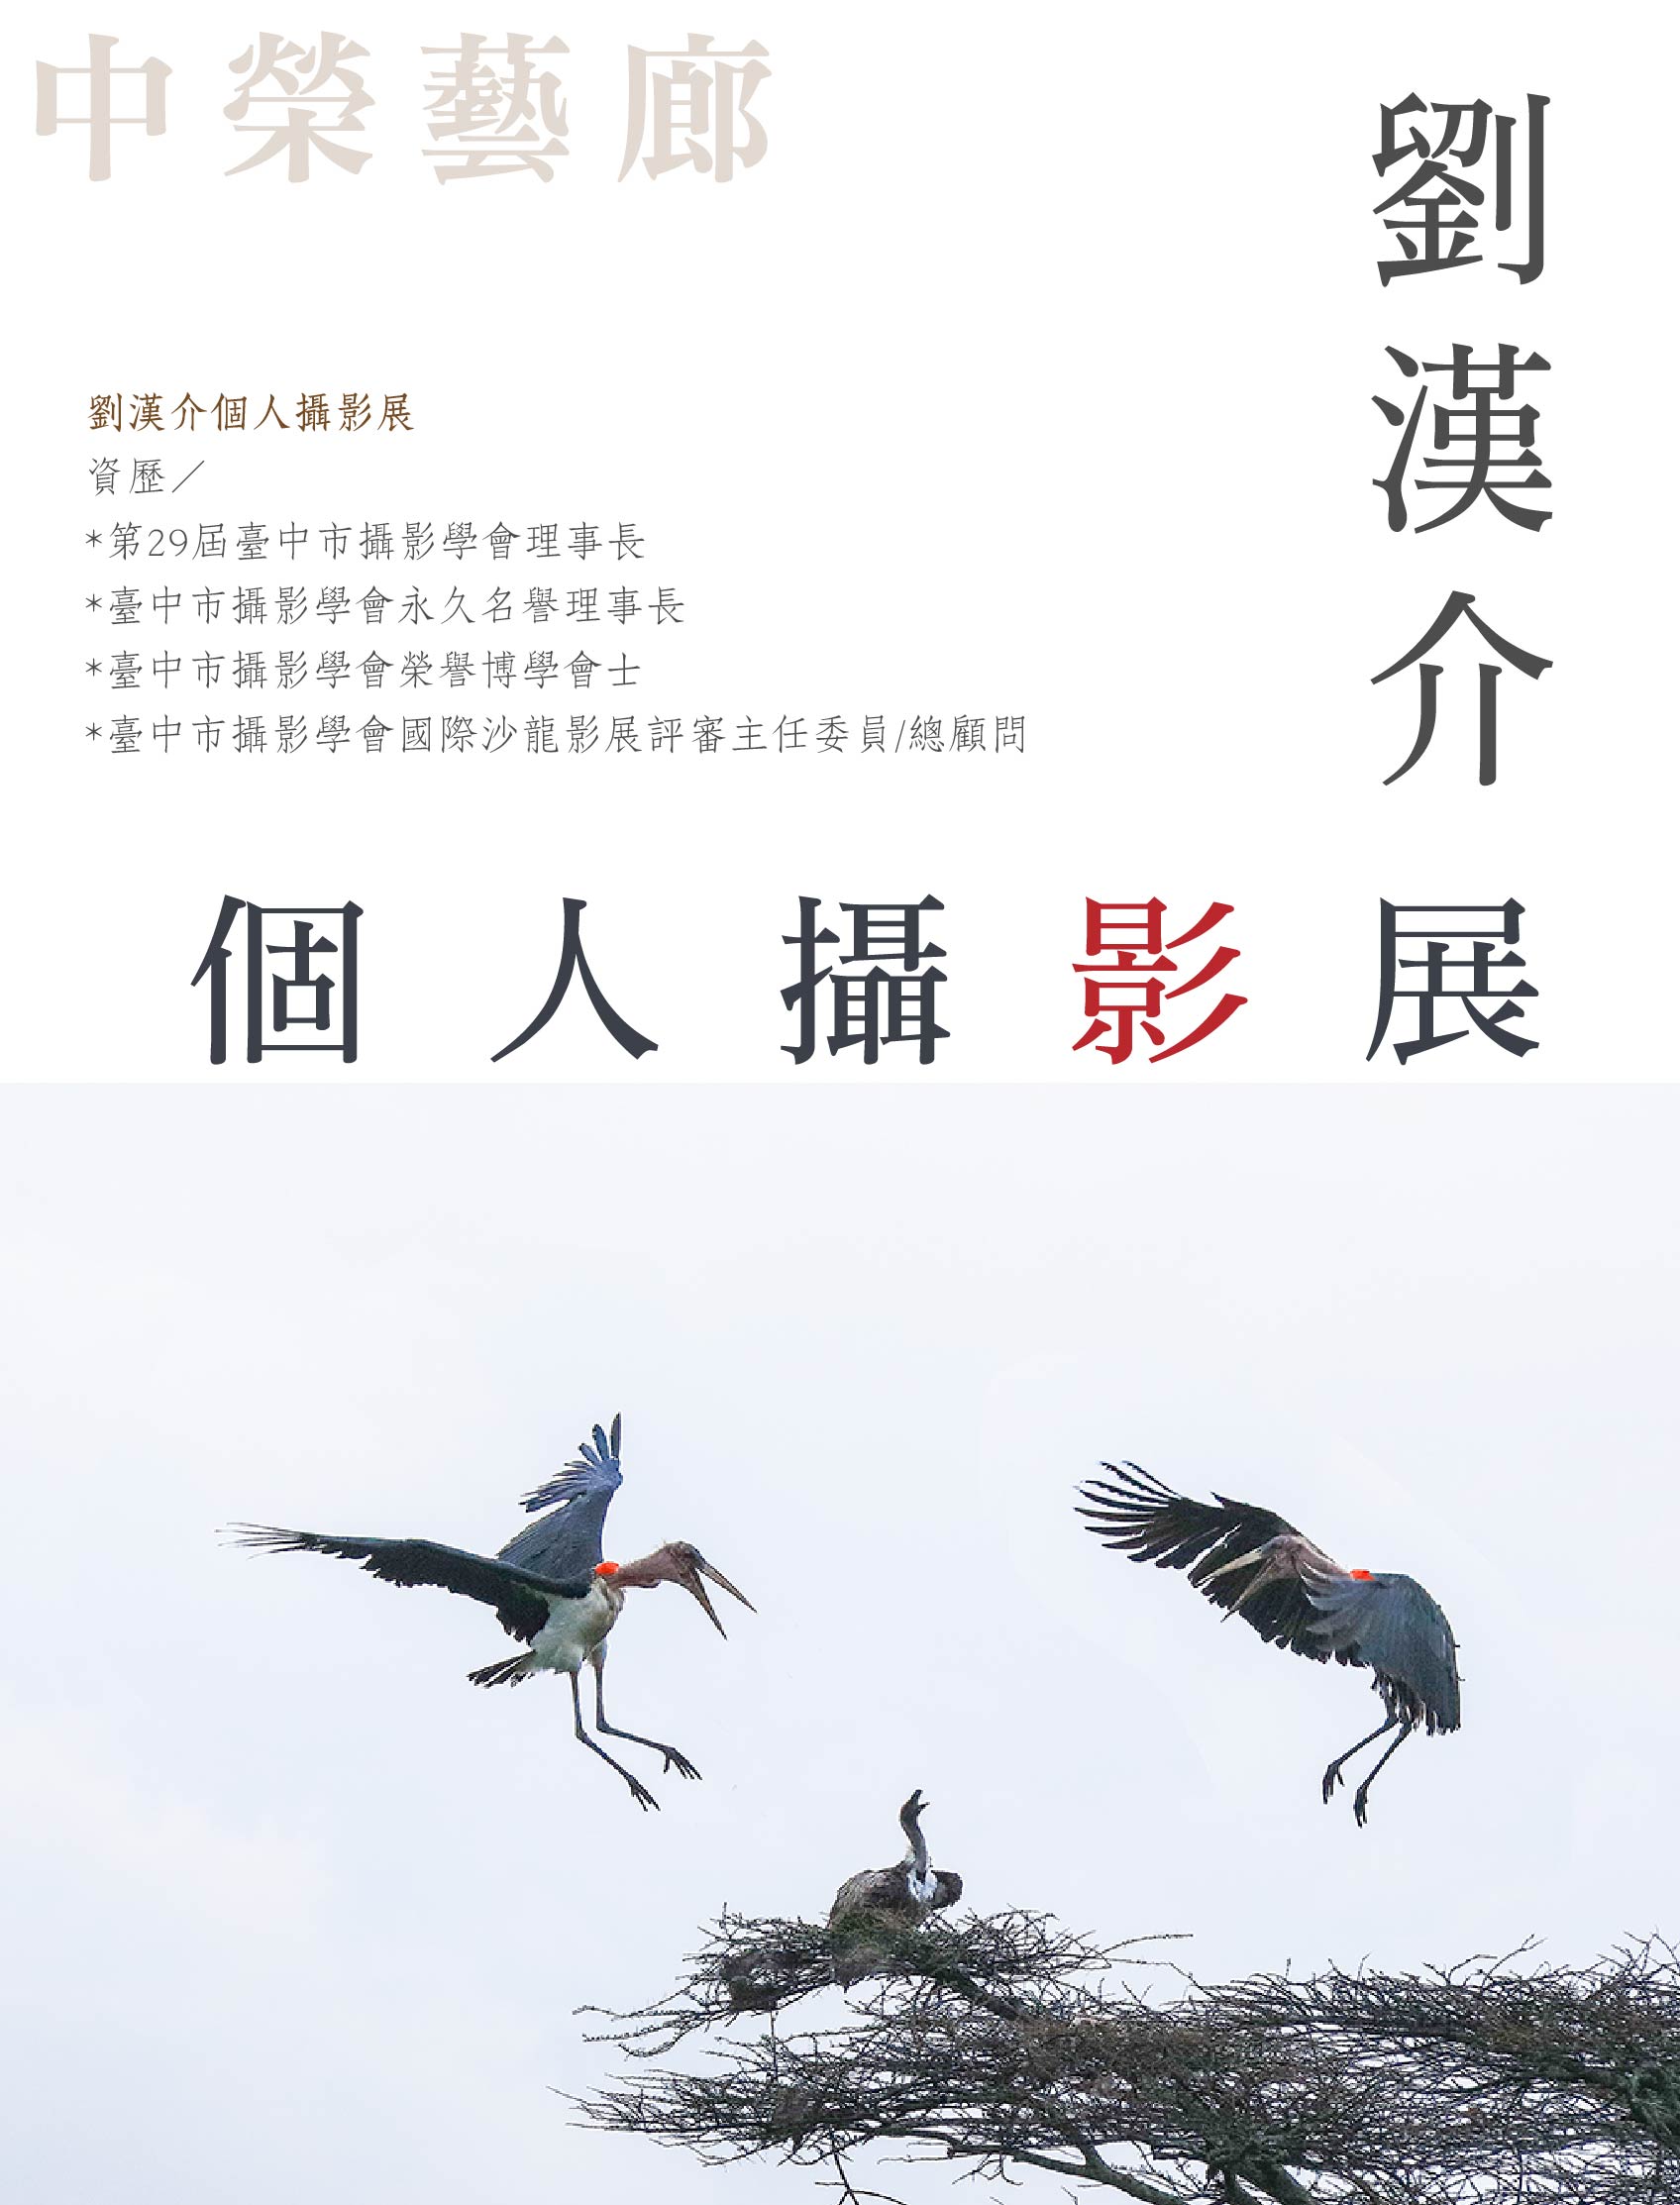 劉漢介個人攝影展宣傳海報